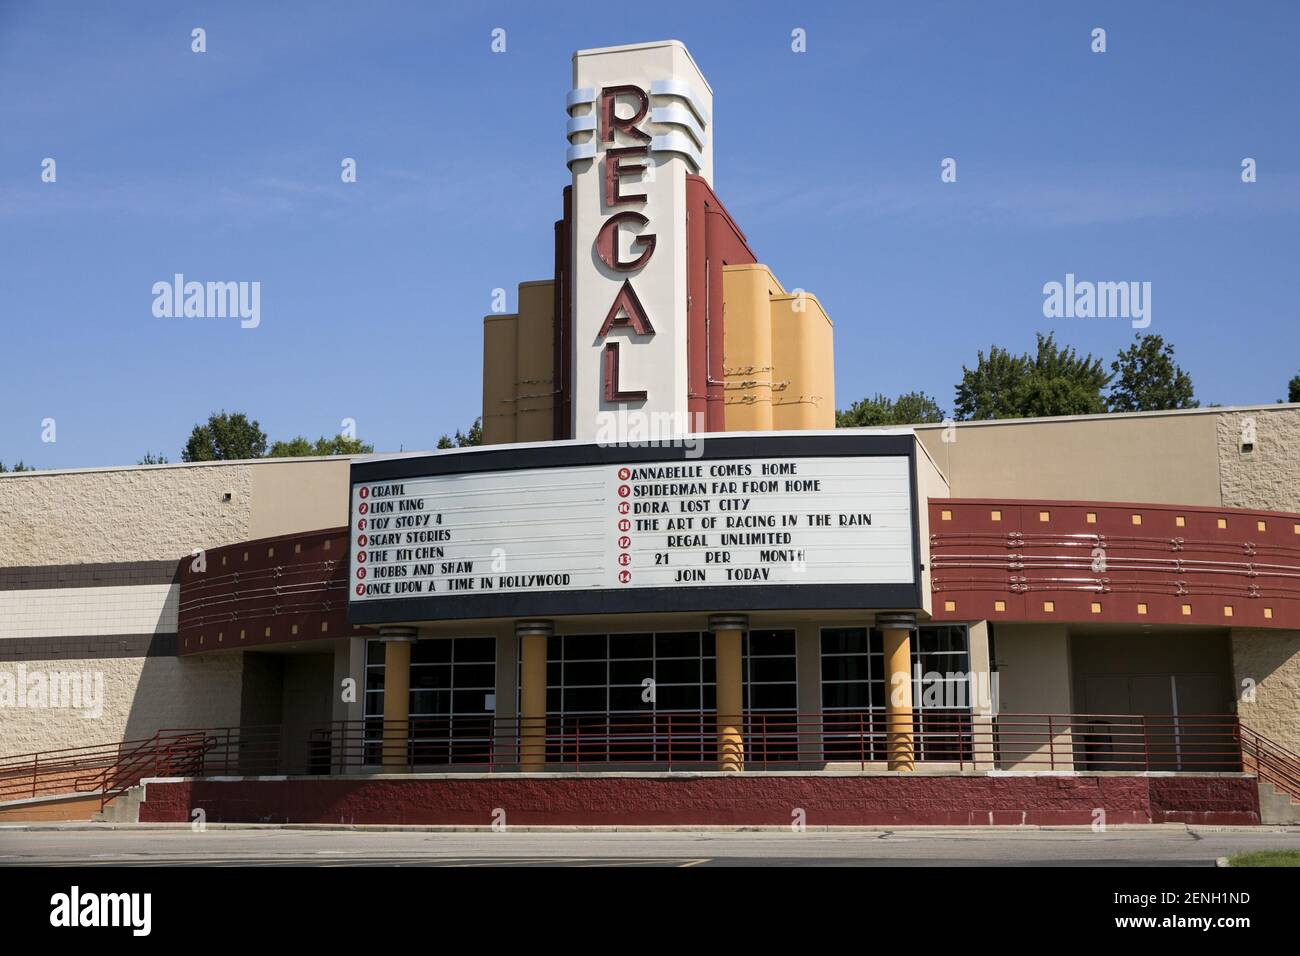 regal movie theater gainesville florida